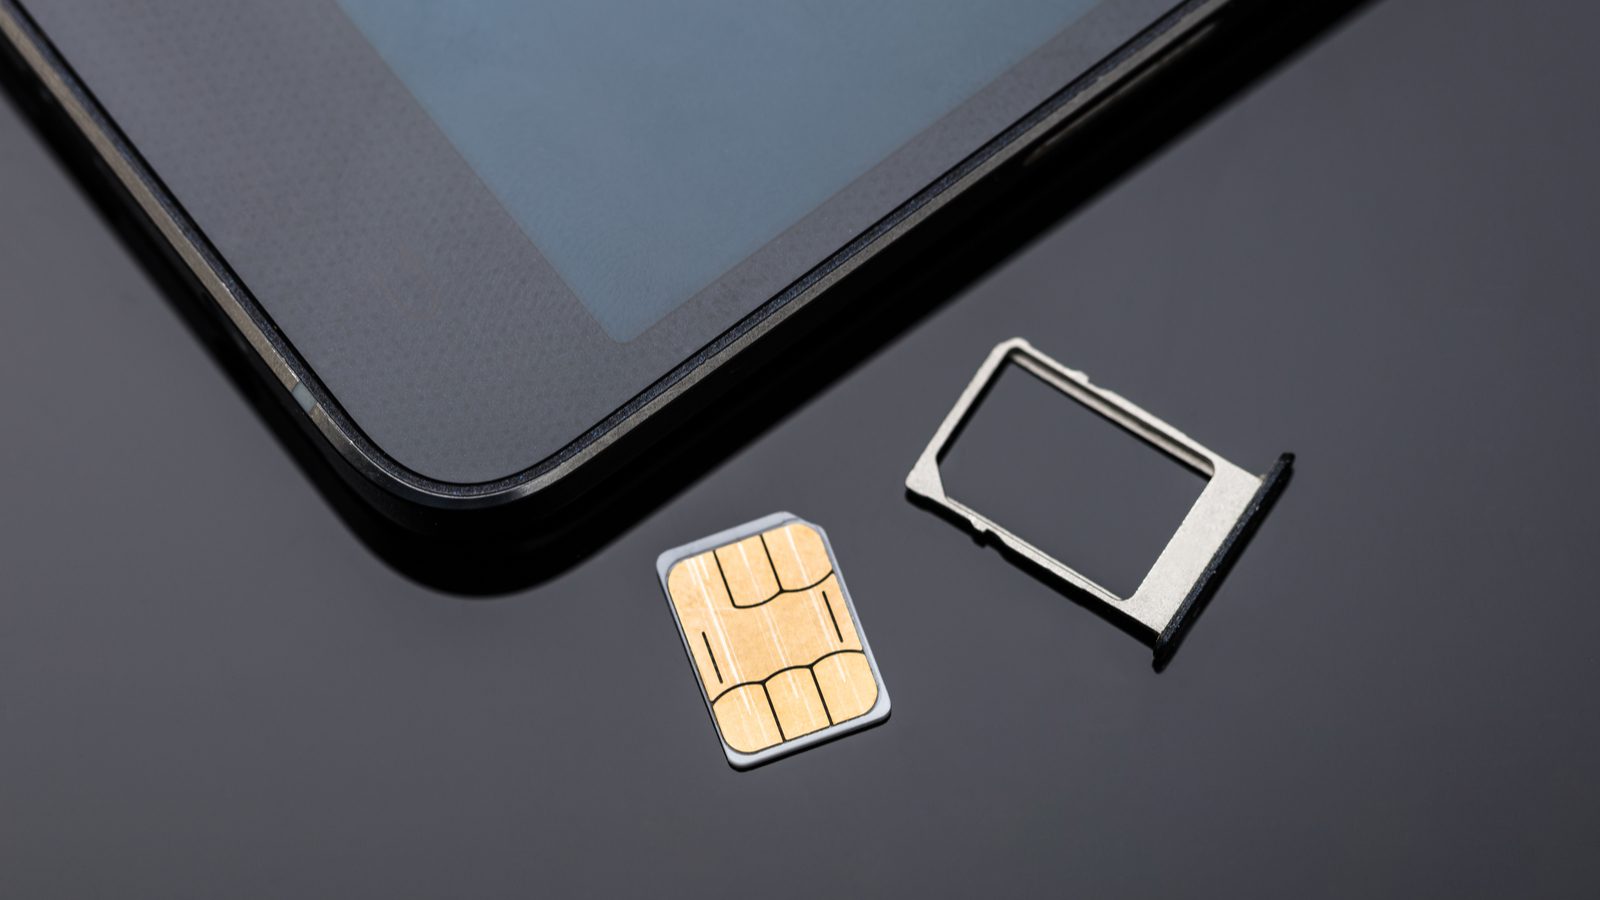 Akta dig för SIM-byte, en skadlig teknik som innebär att du stjäl ditt mobiltelefonnummer (och dina data)